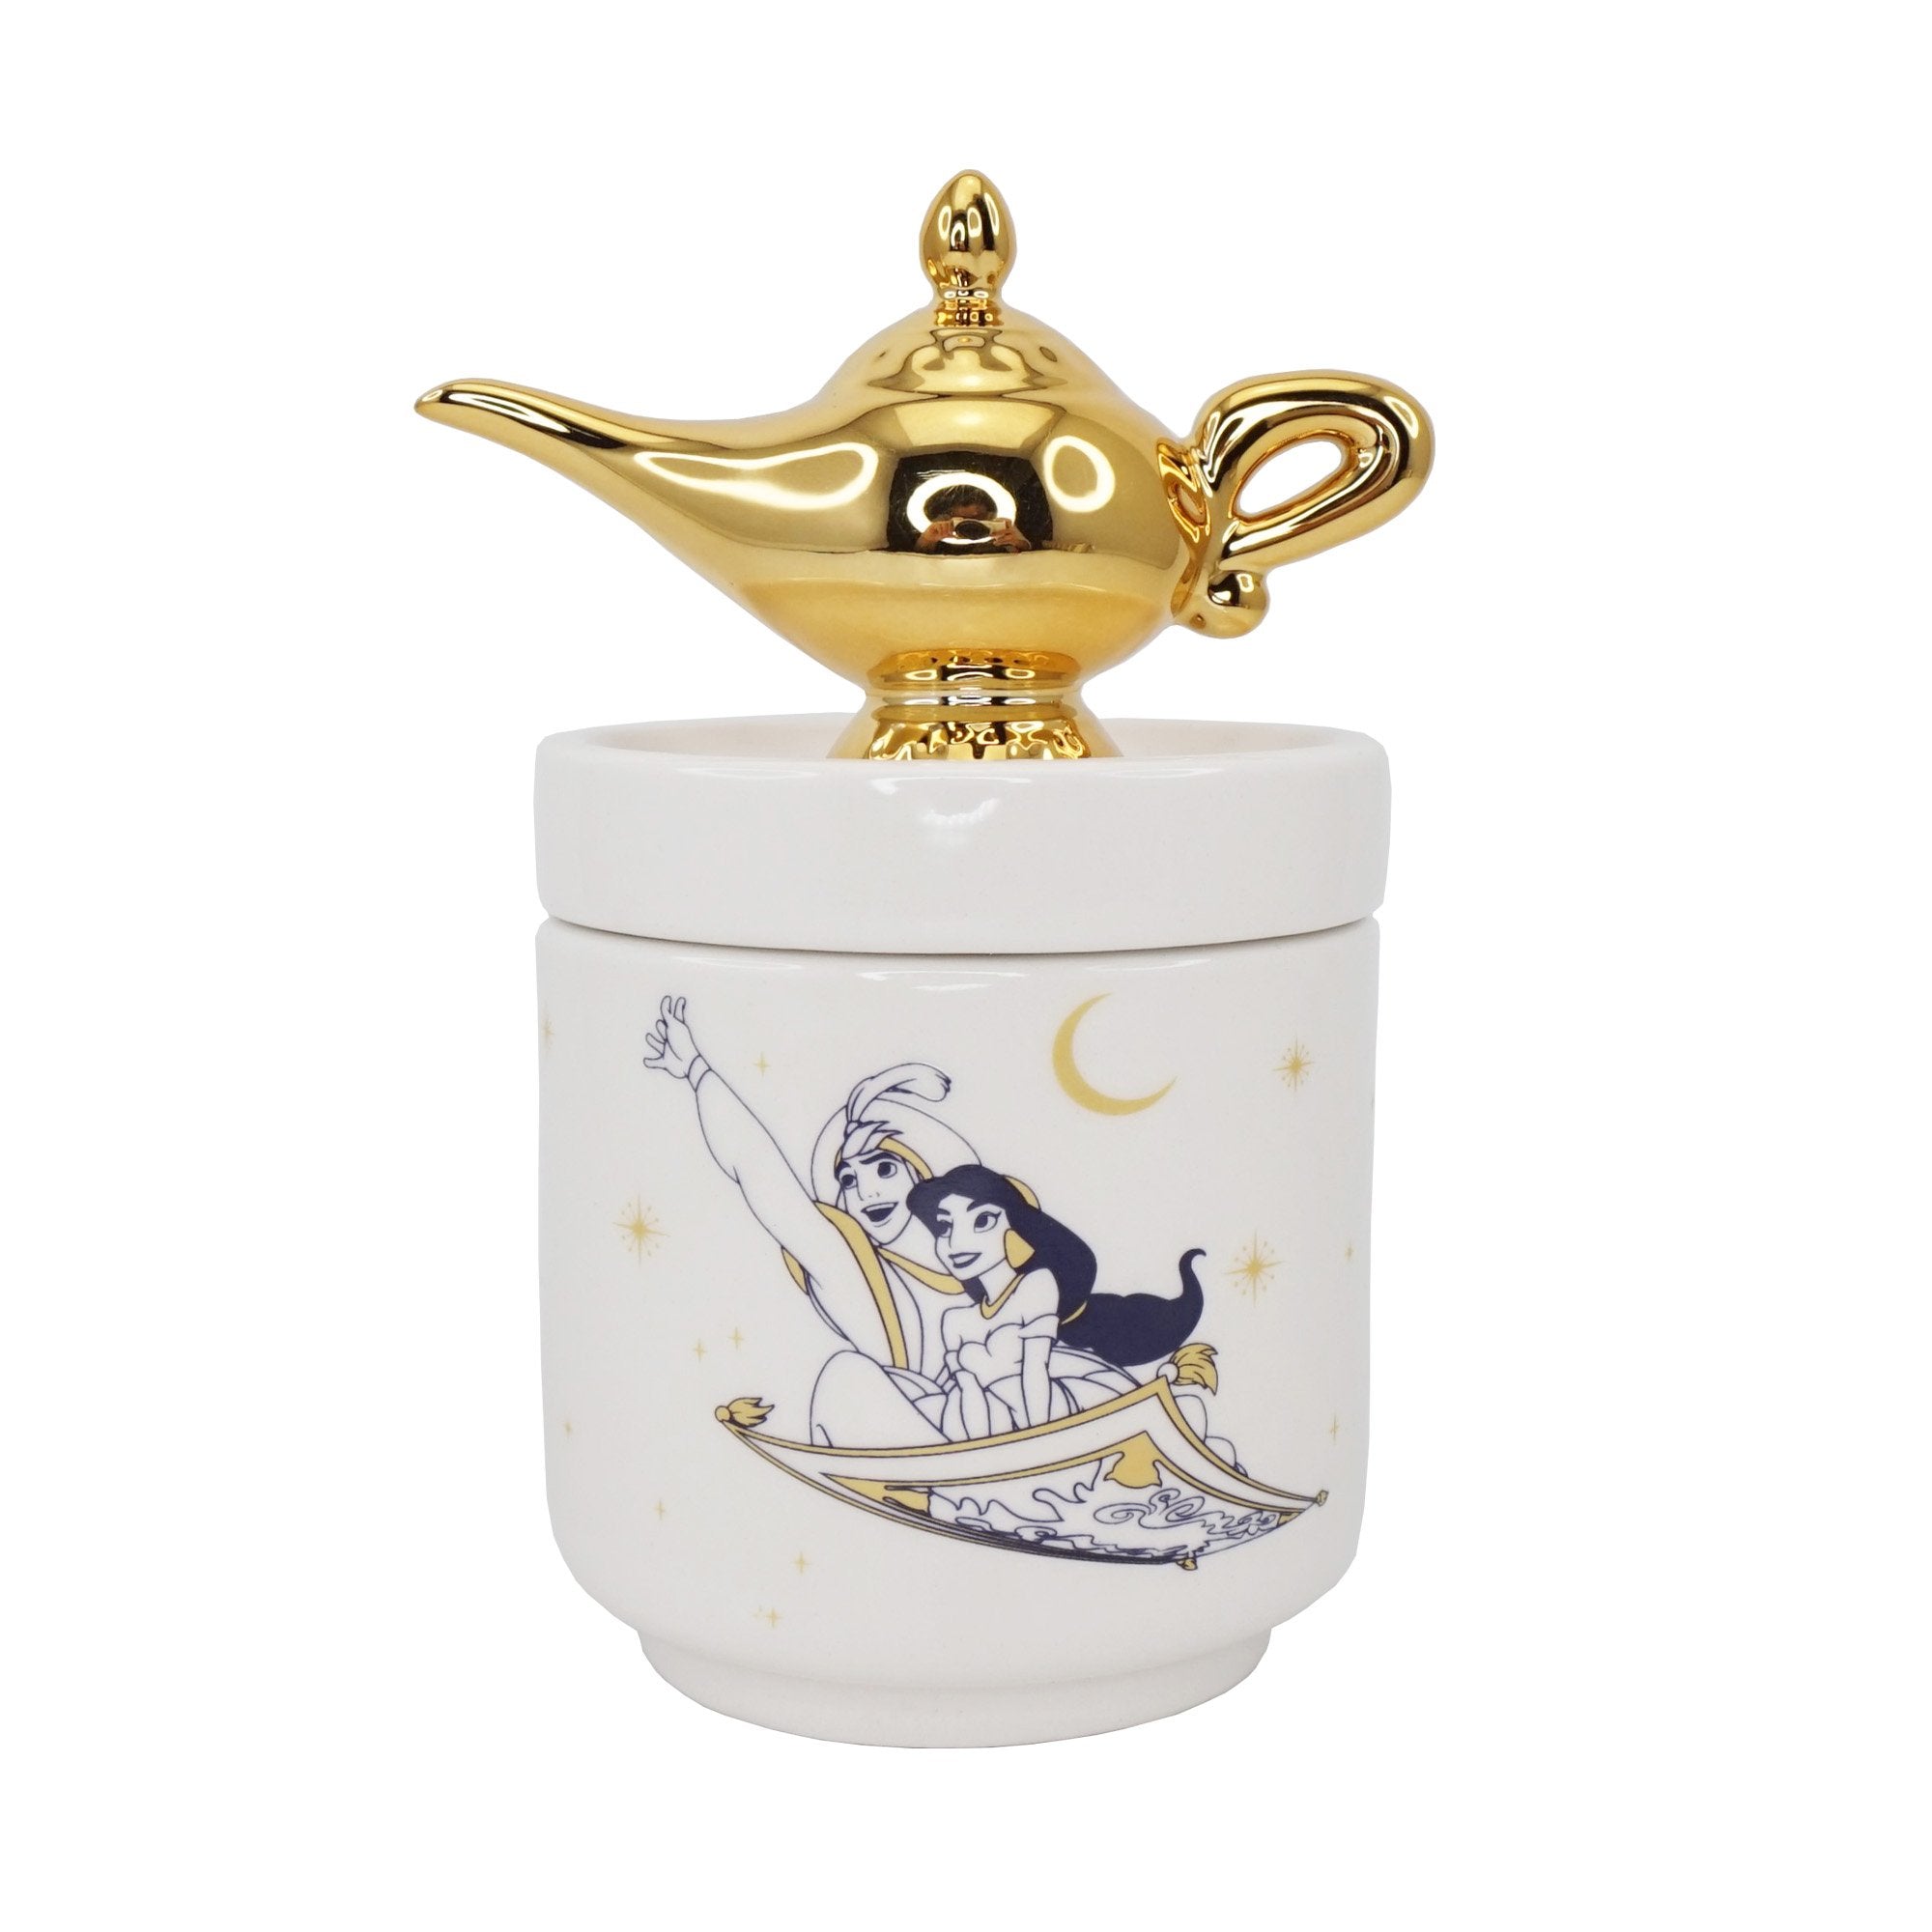 Collector's Box Boxed (14cm) - Disney Aladdin (Lamp)